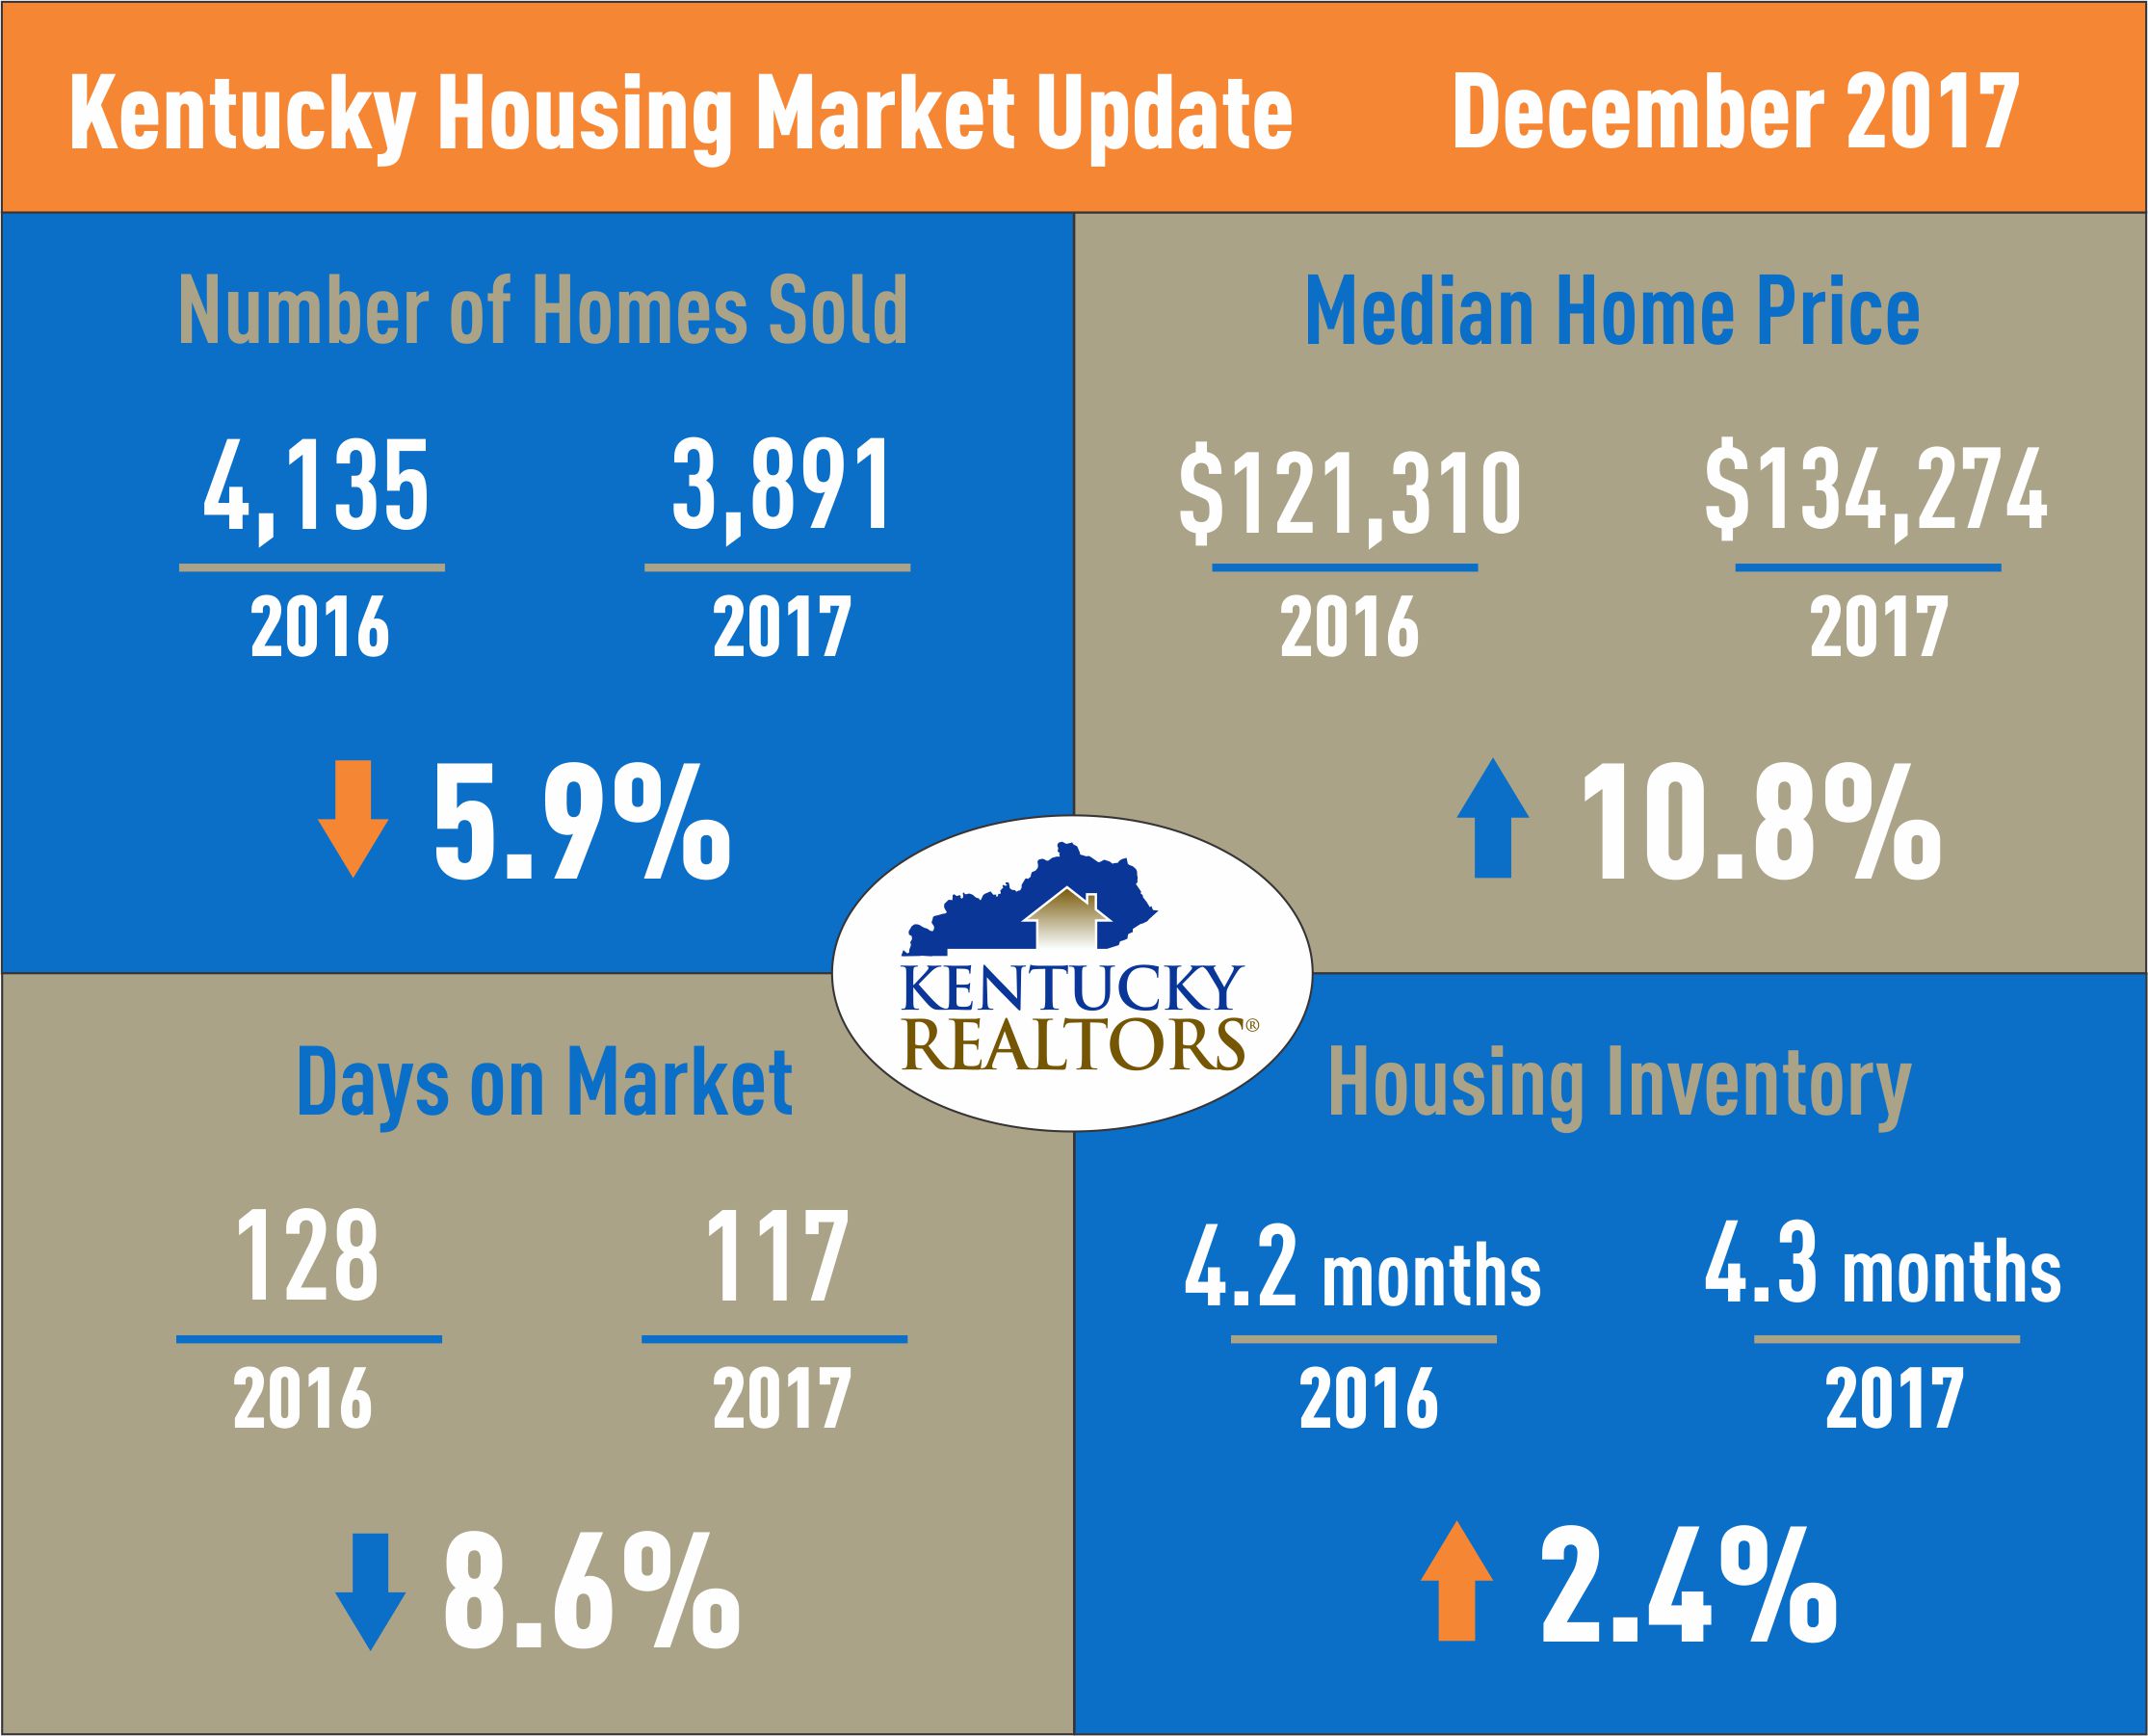 Kentucky Housing Market Update Dec 2017